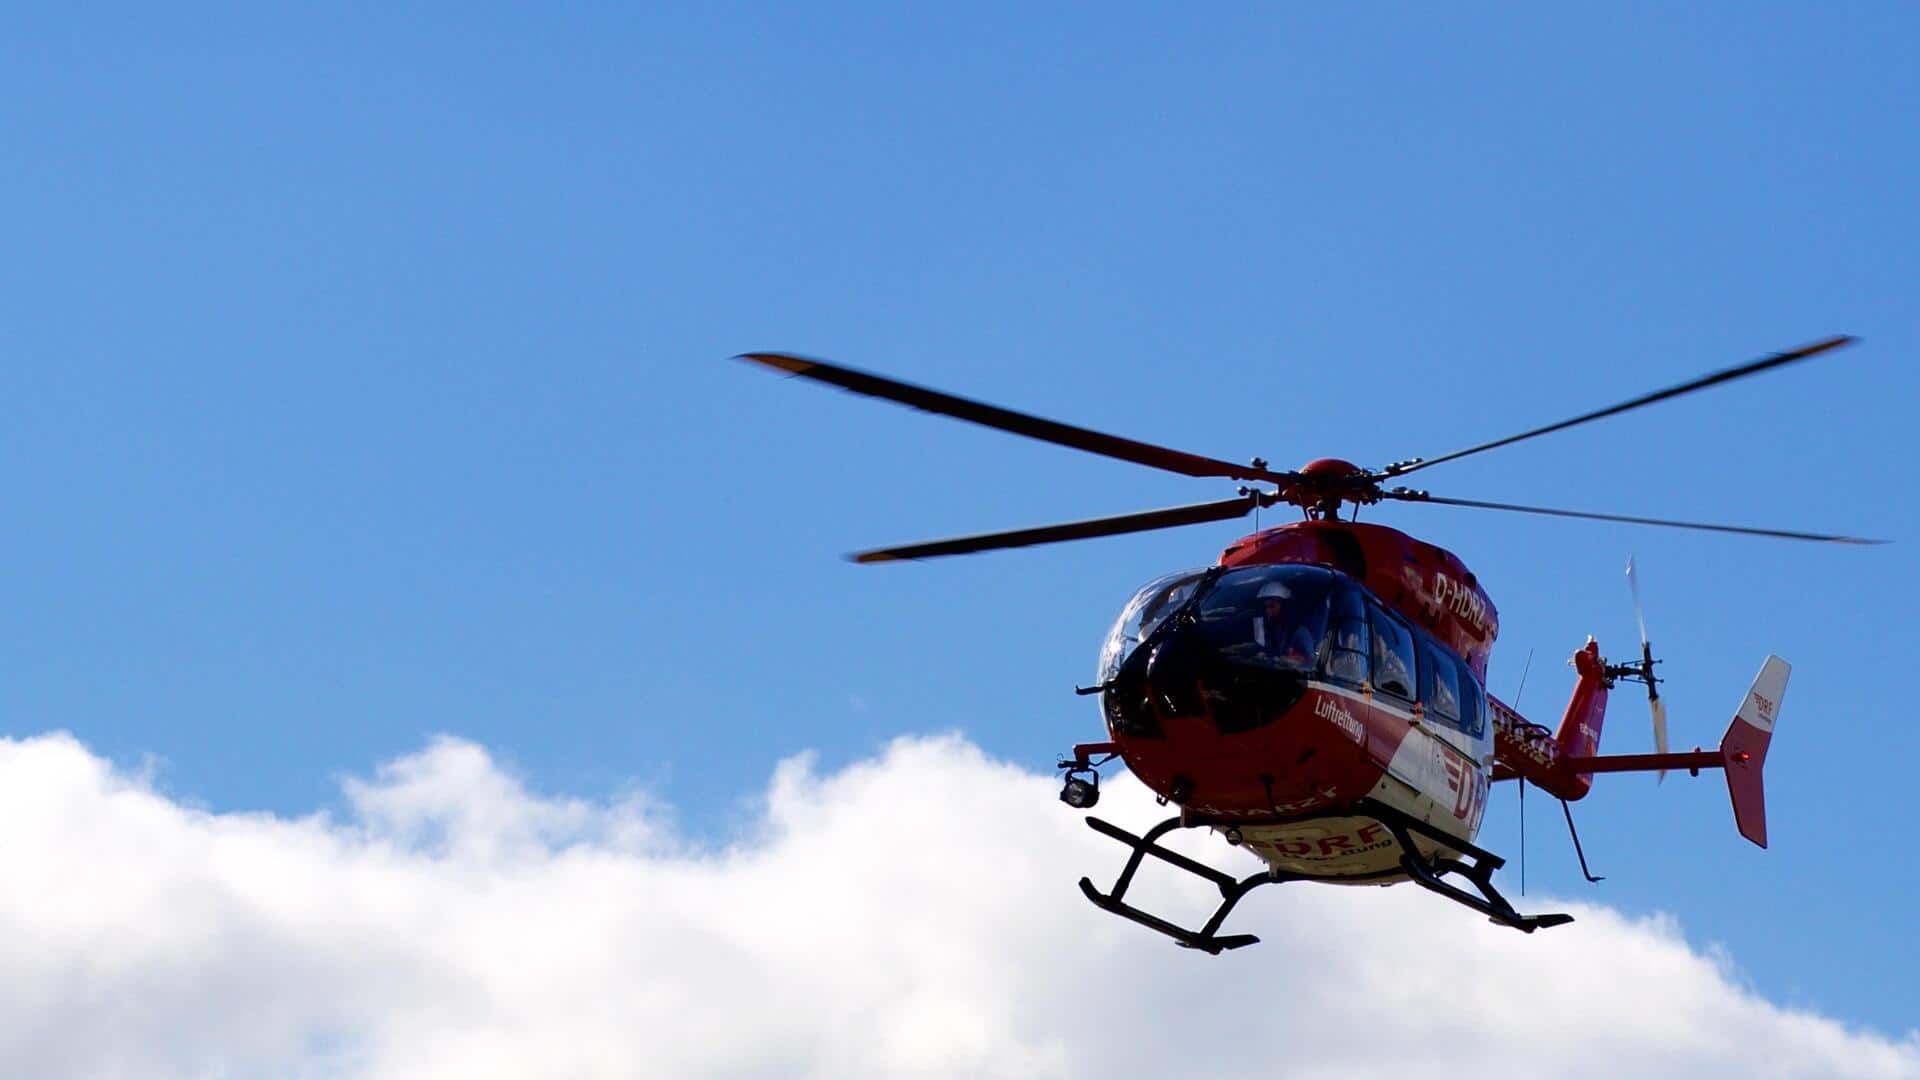 ऊंचे पहाड़ी इलाकों में हेलीकॉप्टर उड़ाने वाले पायलटों को दी जाएगी विशेष ट्रेनिंग, नए दिशा-निर्देश जारी